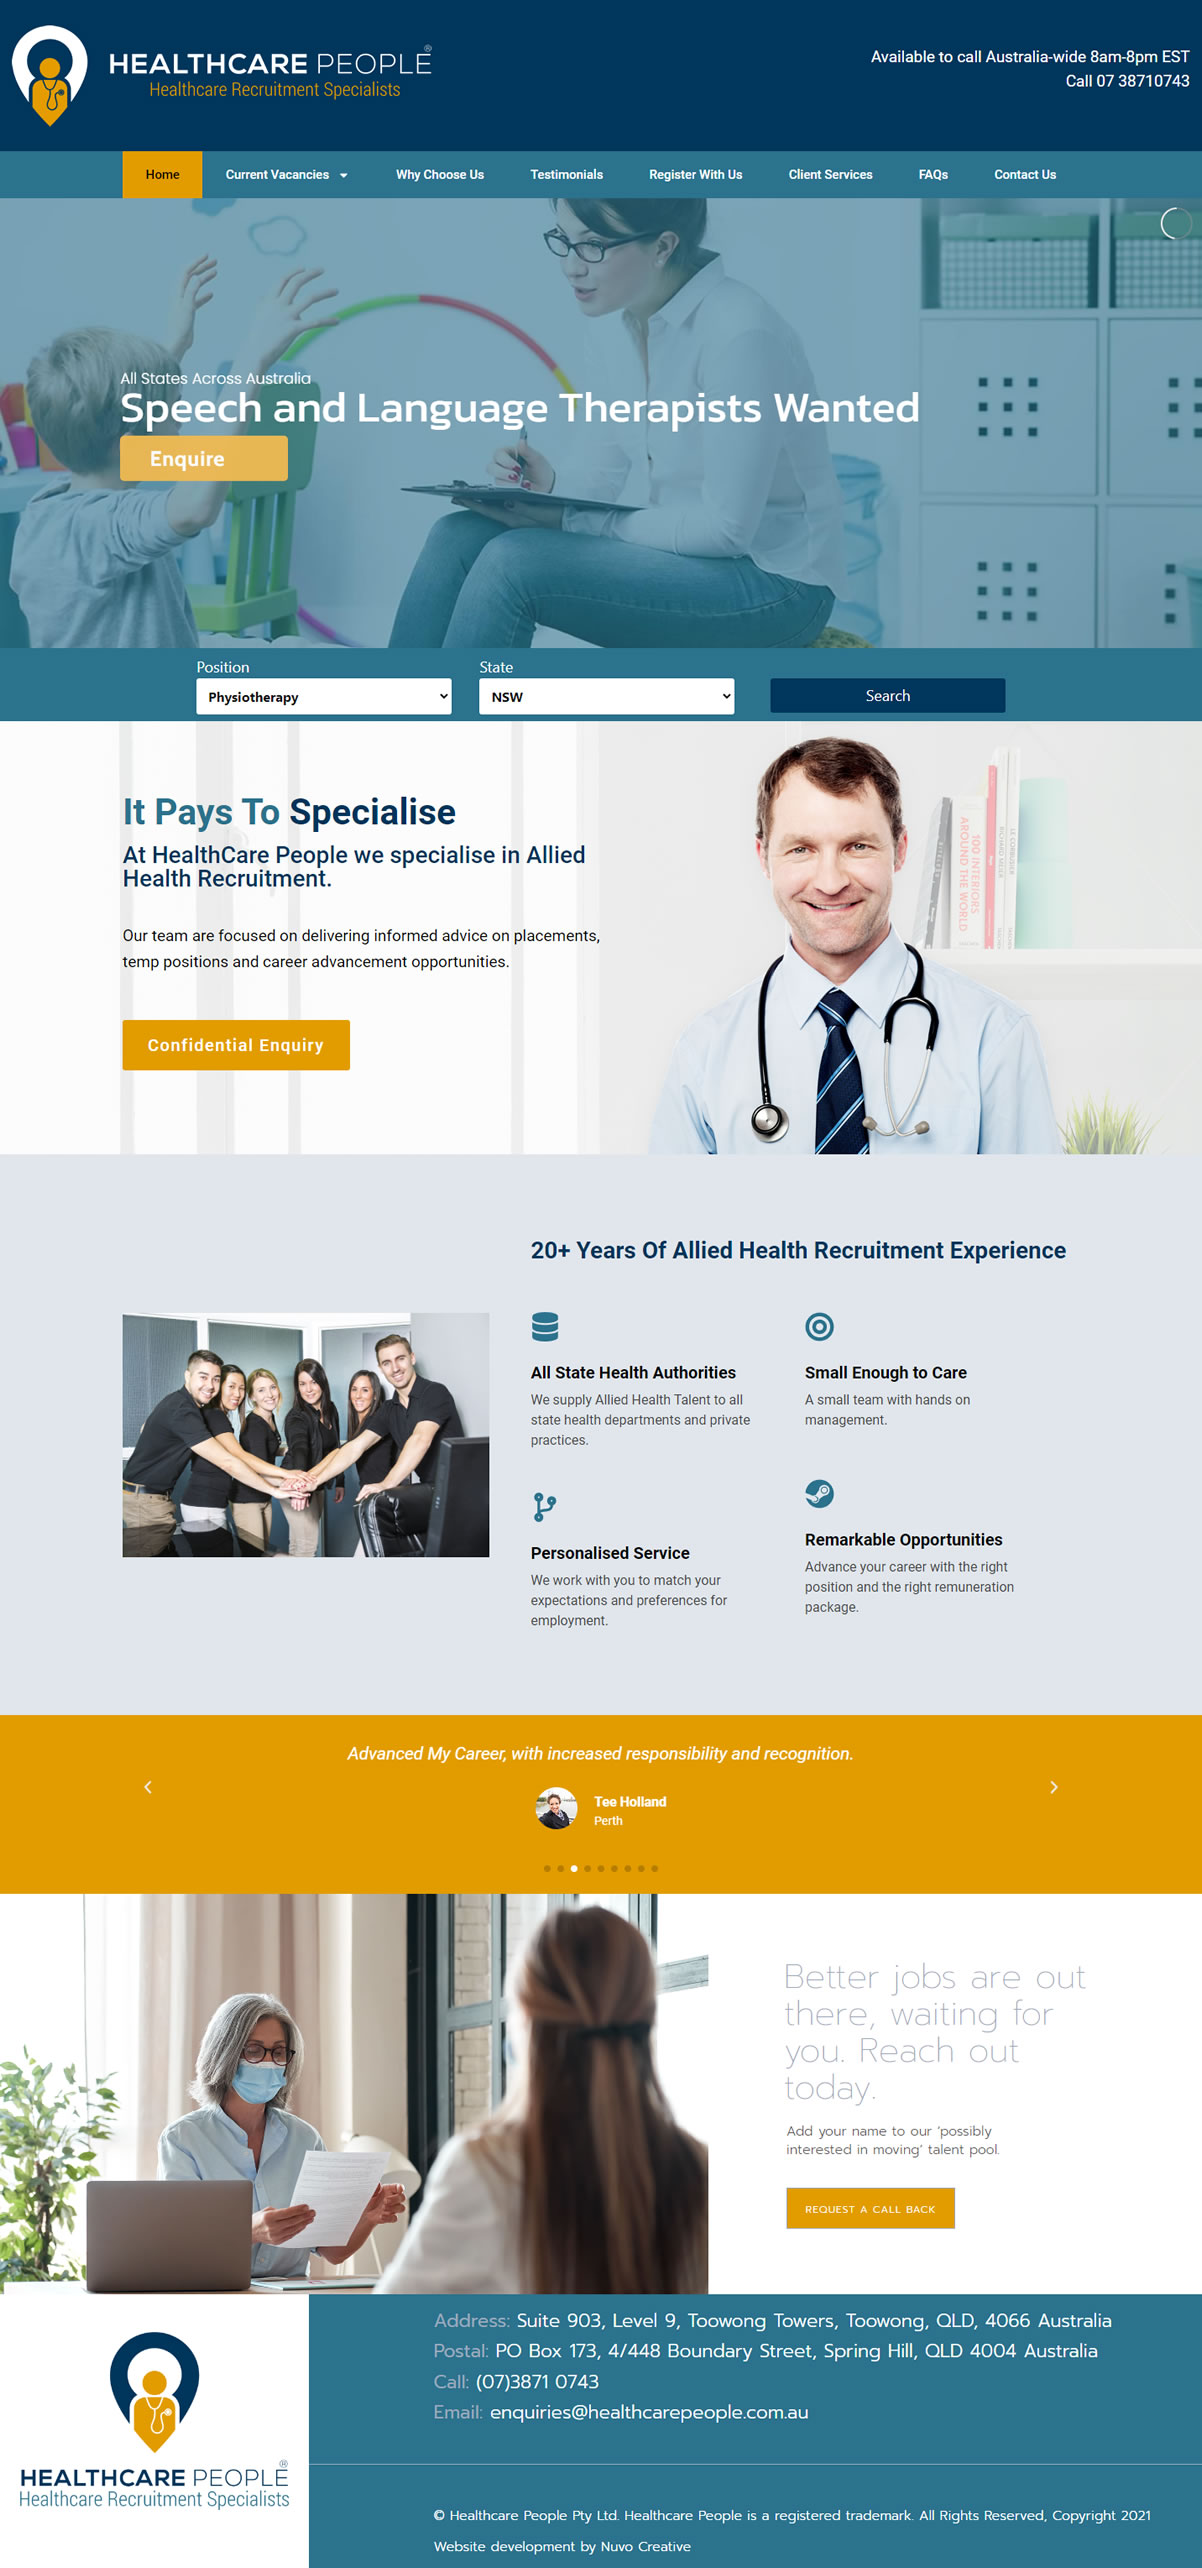 Visit Healthcarepeople.com.au